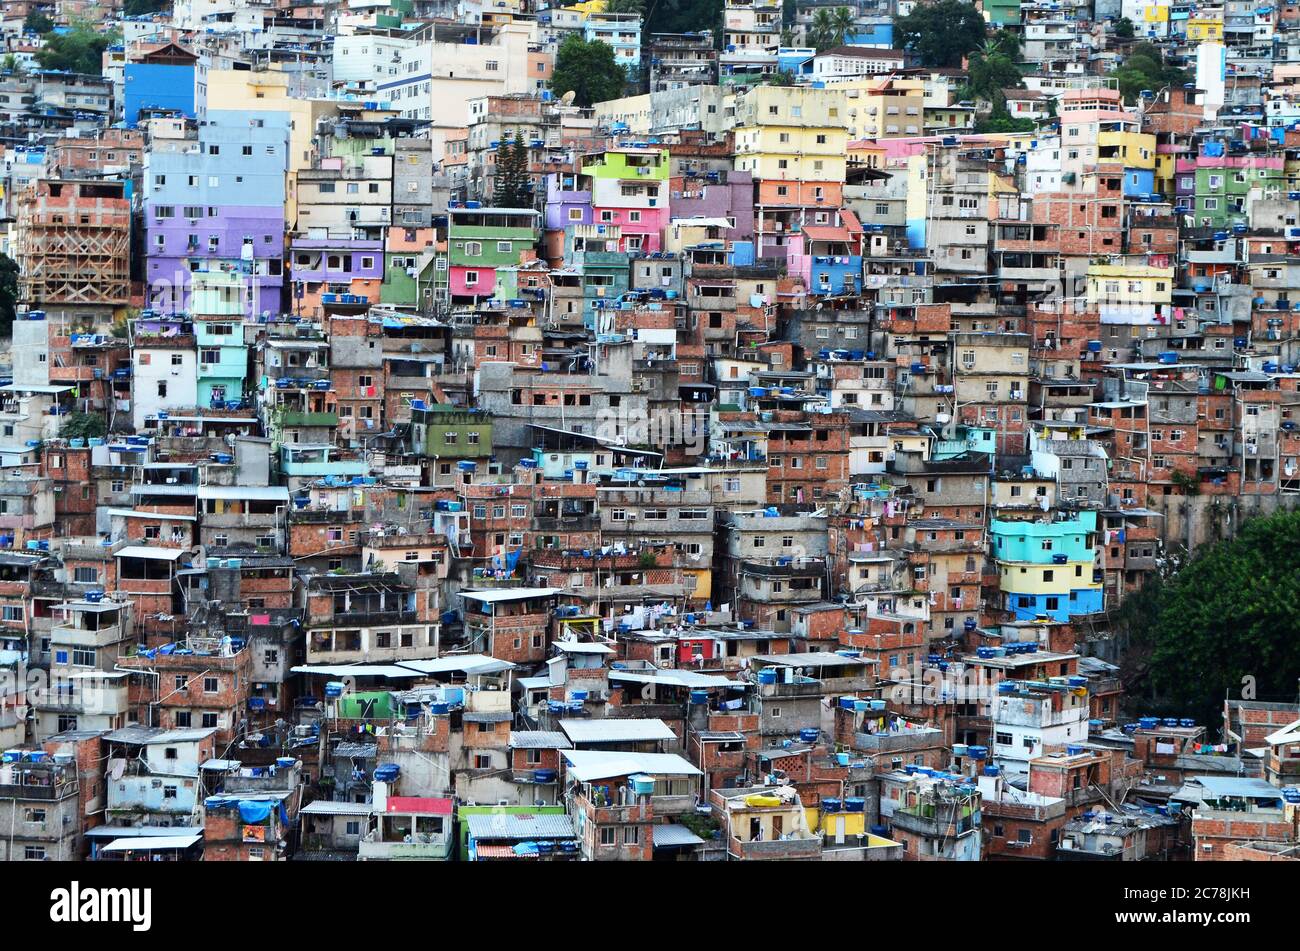 Title View over Rocinha favela - Rio de Janeiro, Brazil Stock Photo